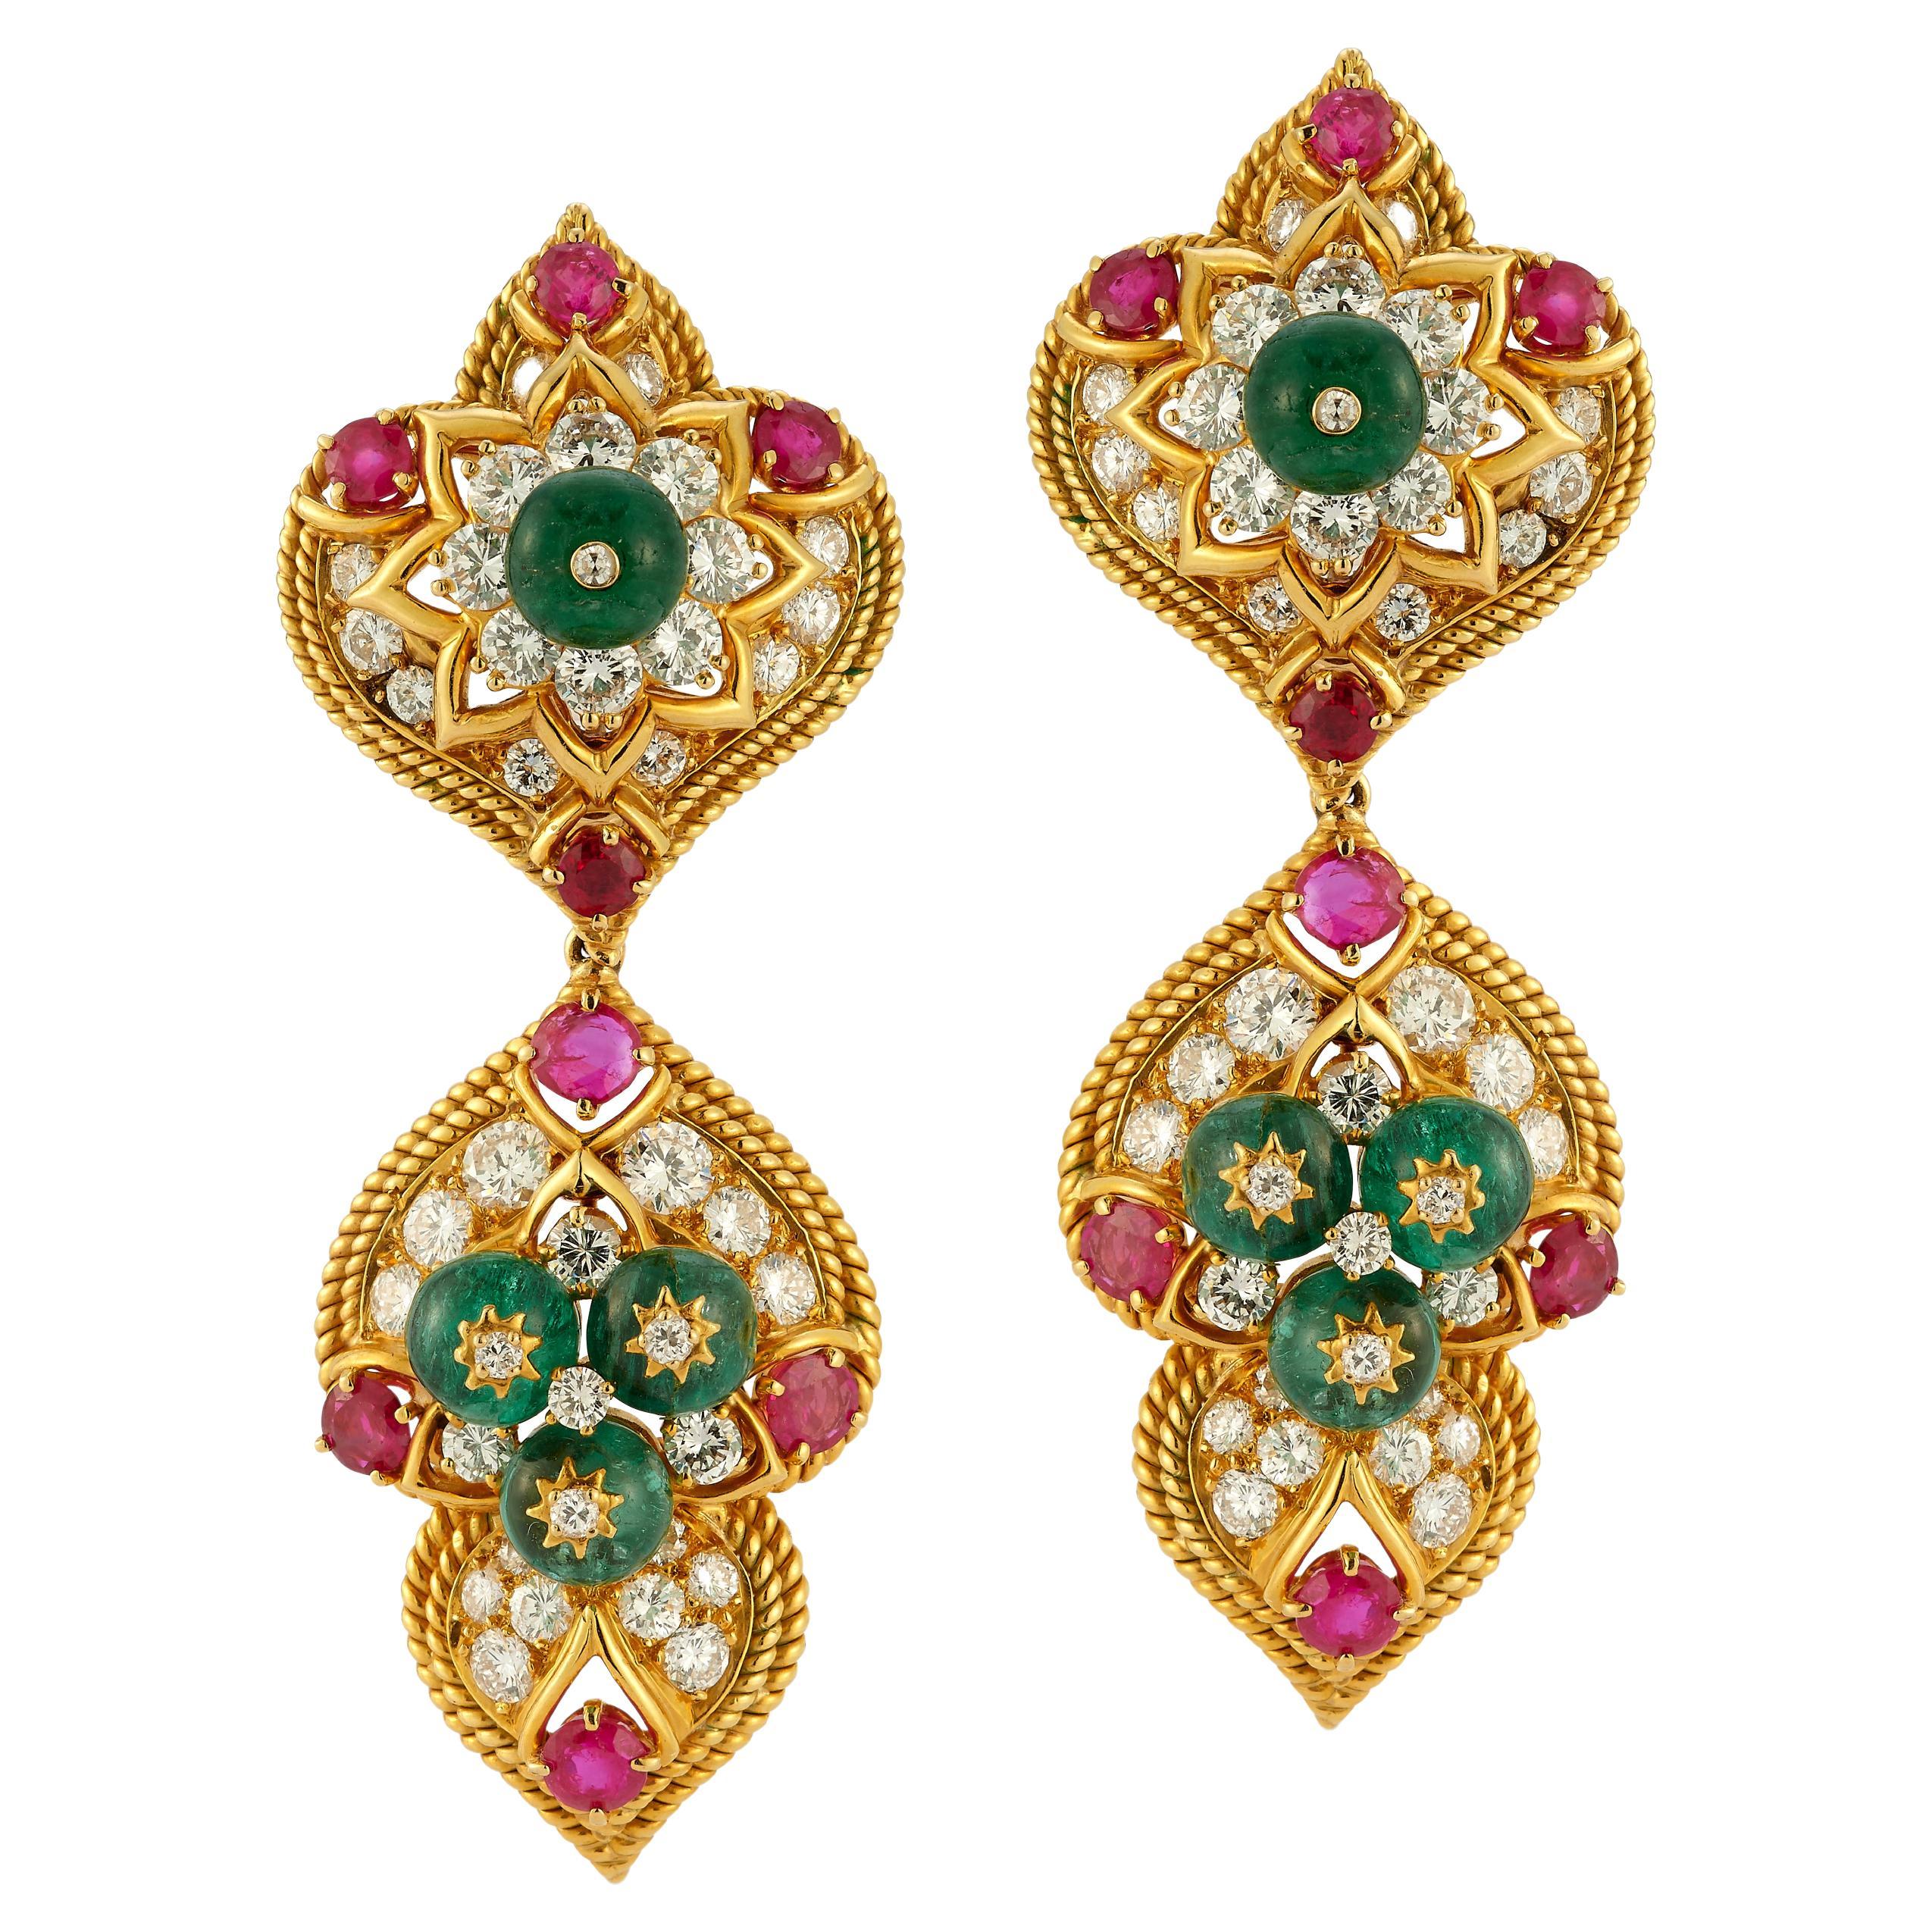 Van Cleef & Arpels Indian Inspired Day & Night Earrings